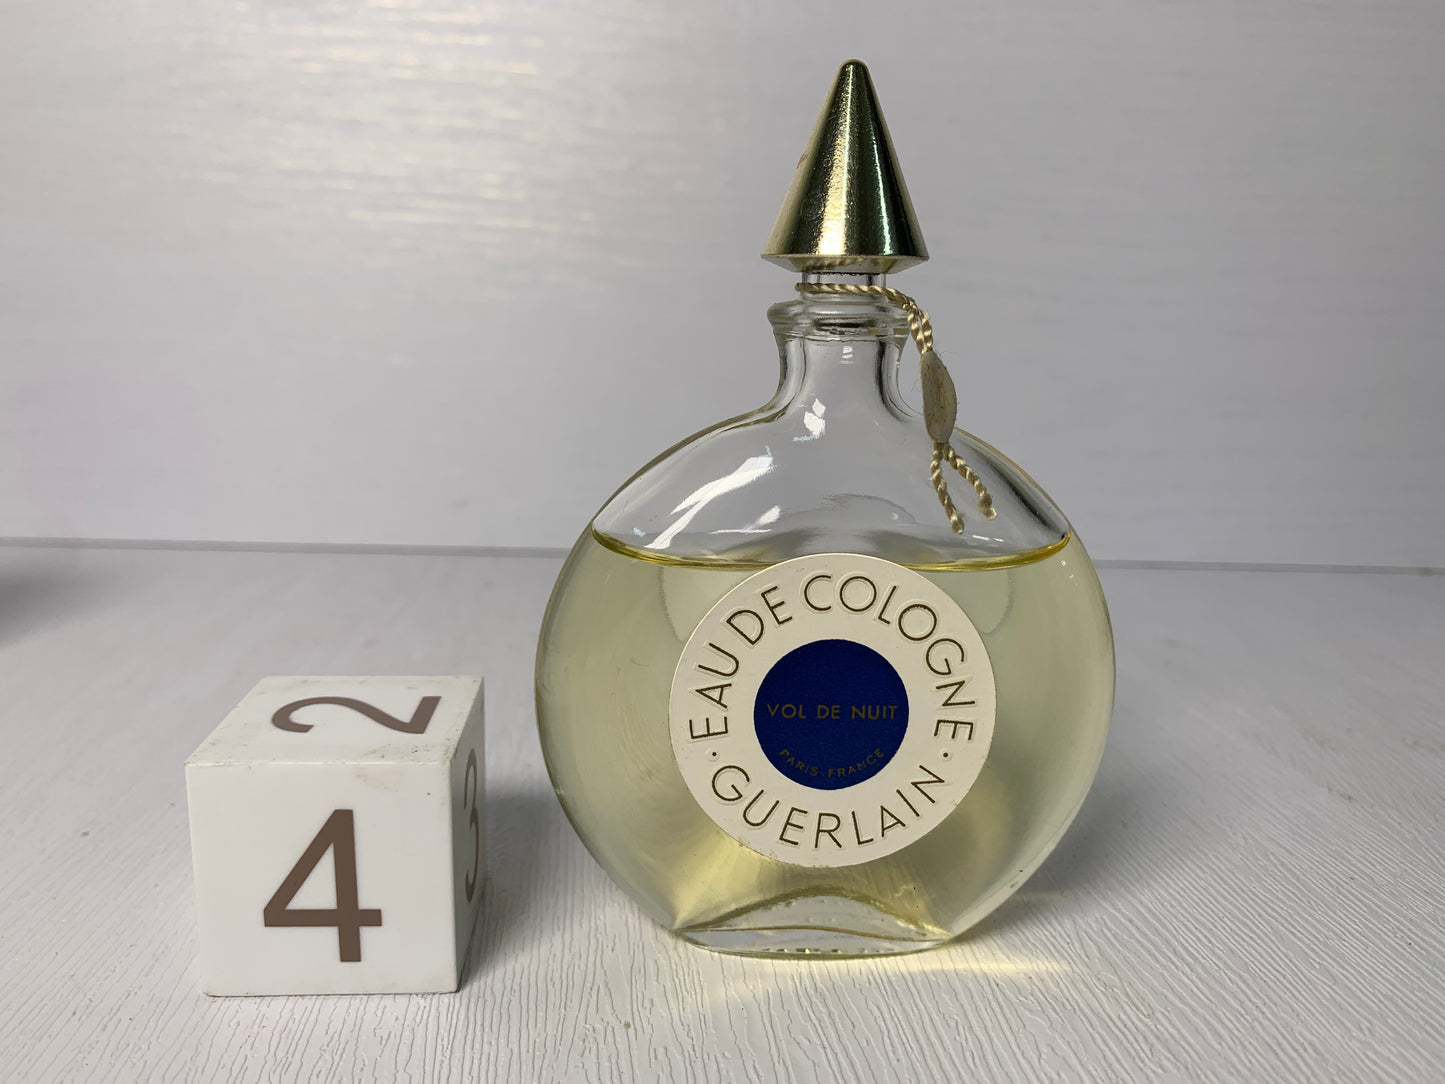 Rare Guerlain Vol de nuit eau de cologne 50ml  1.7 oz- 11FEB22